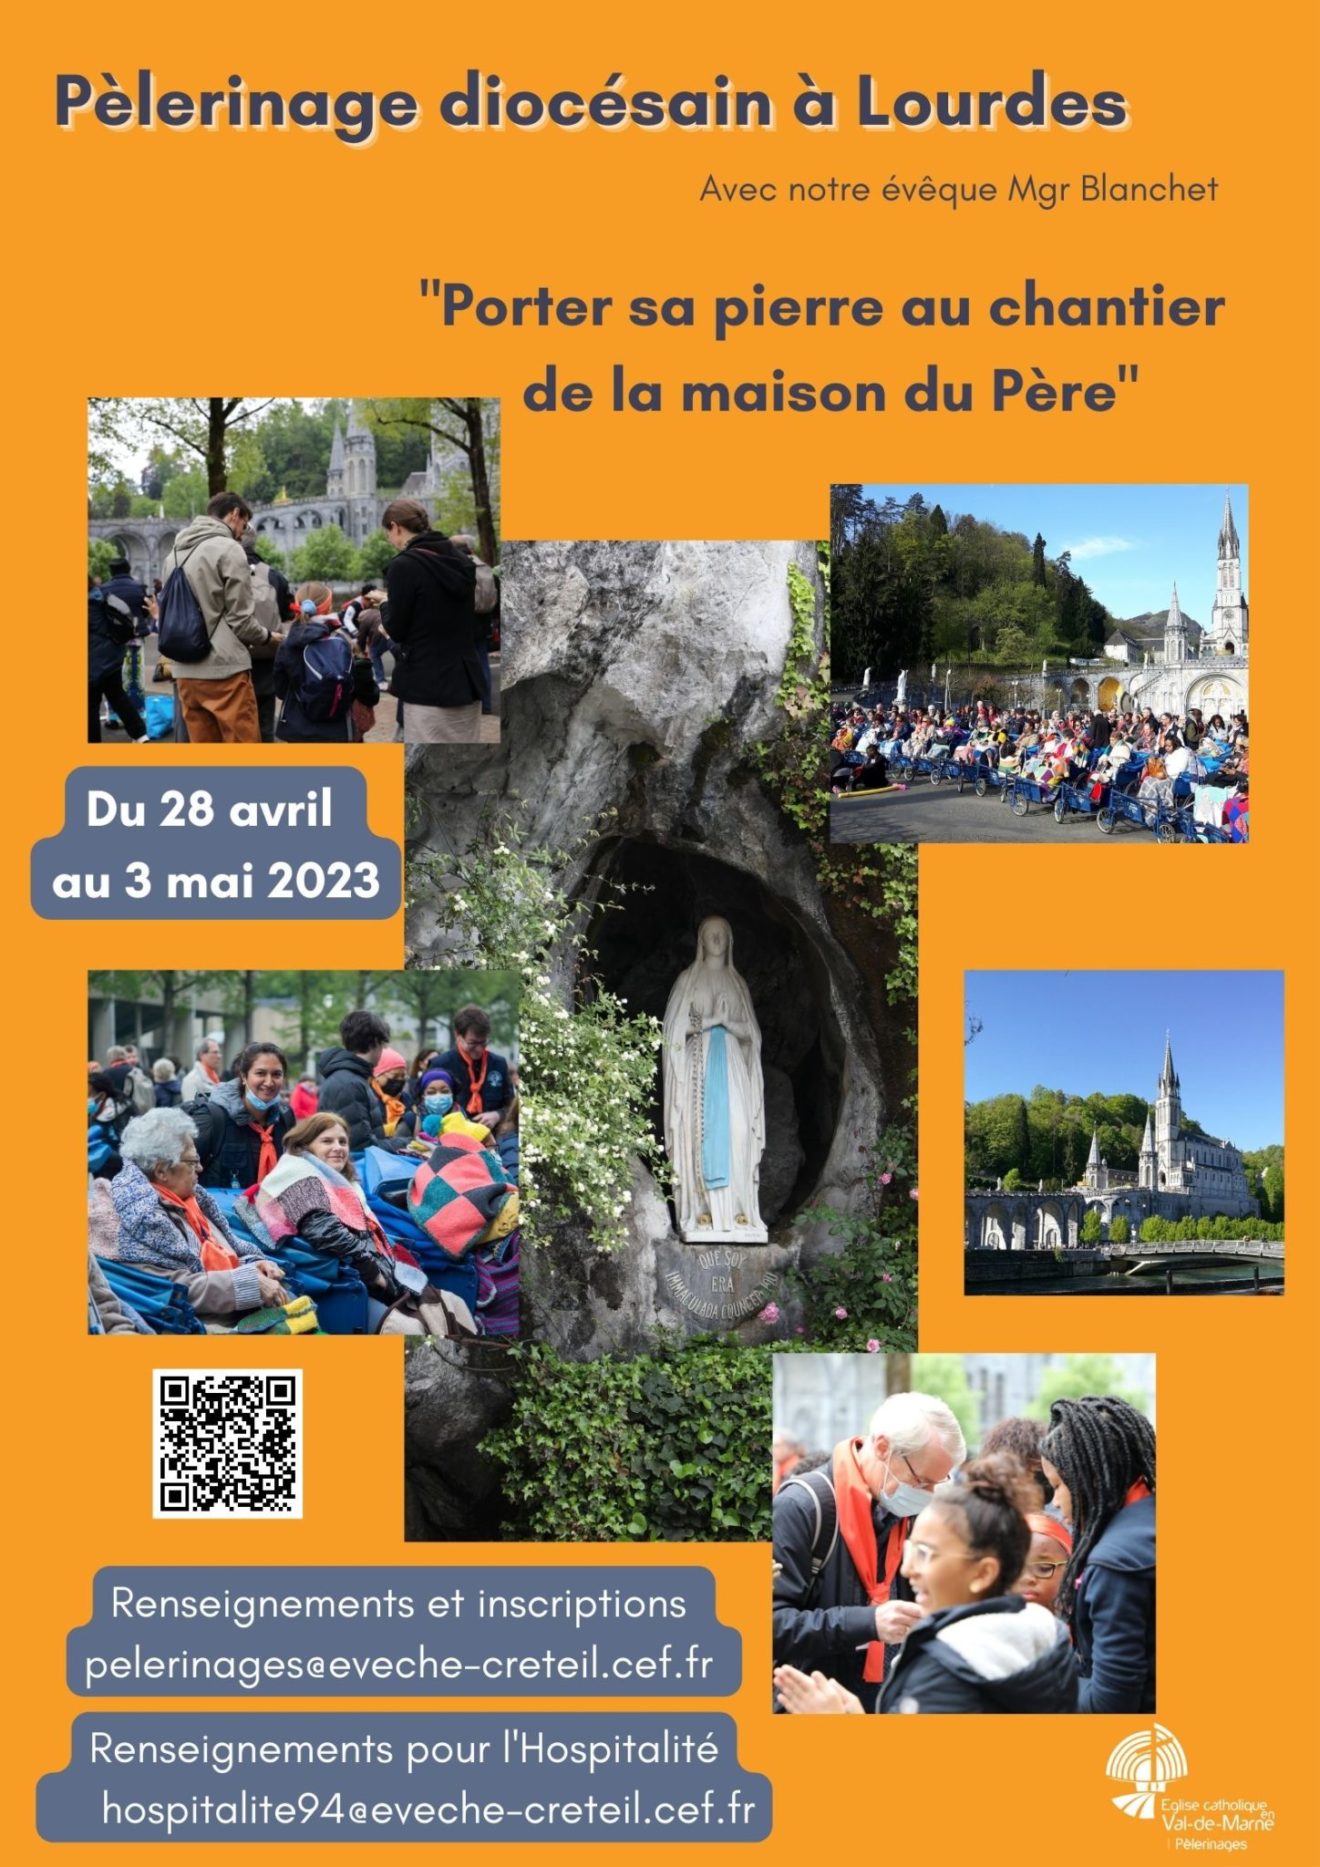 Pèlerinage diocésain à Lourdes du 28 avril au 3 mai 2023